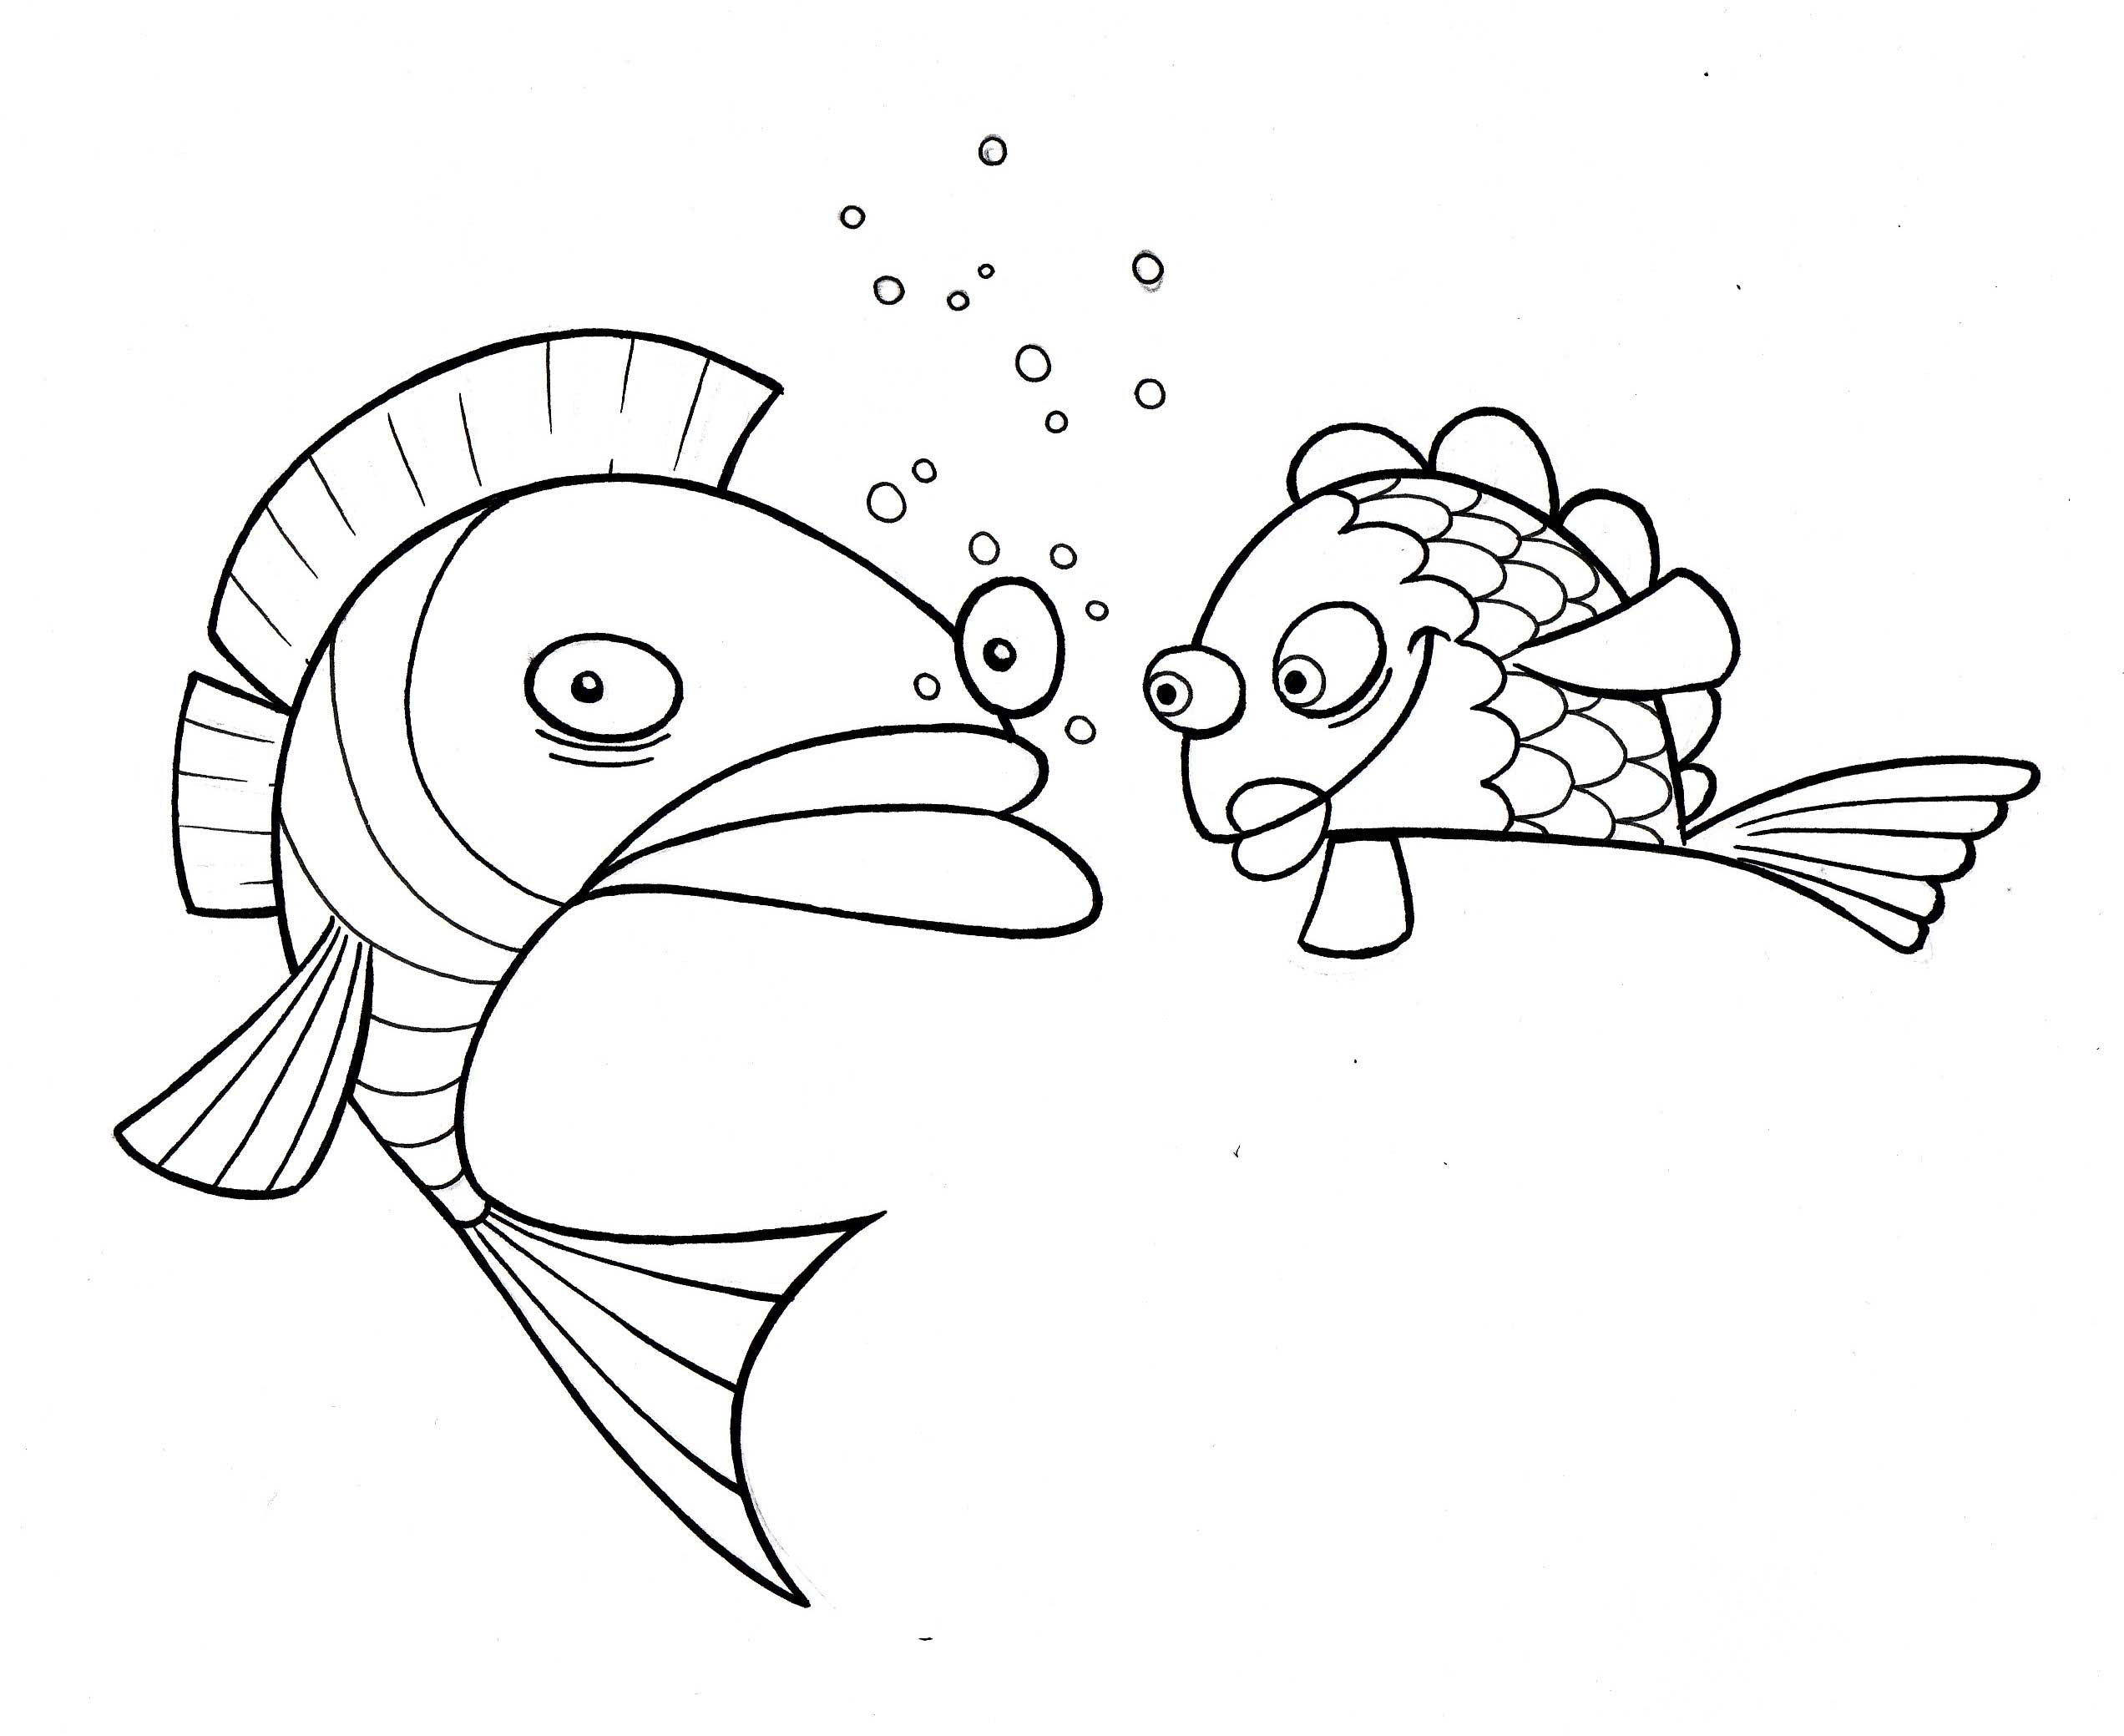 Fish Coloring Pages Images Ã¢â‚¬â€œ Animal Place